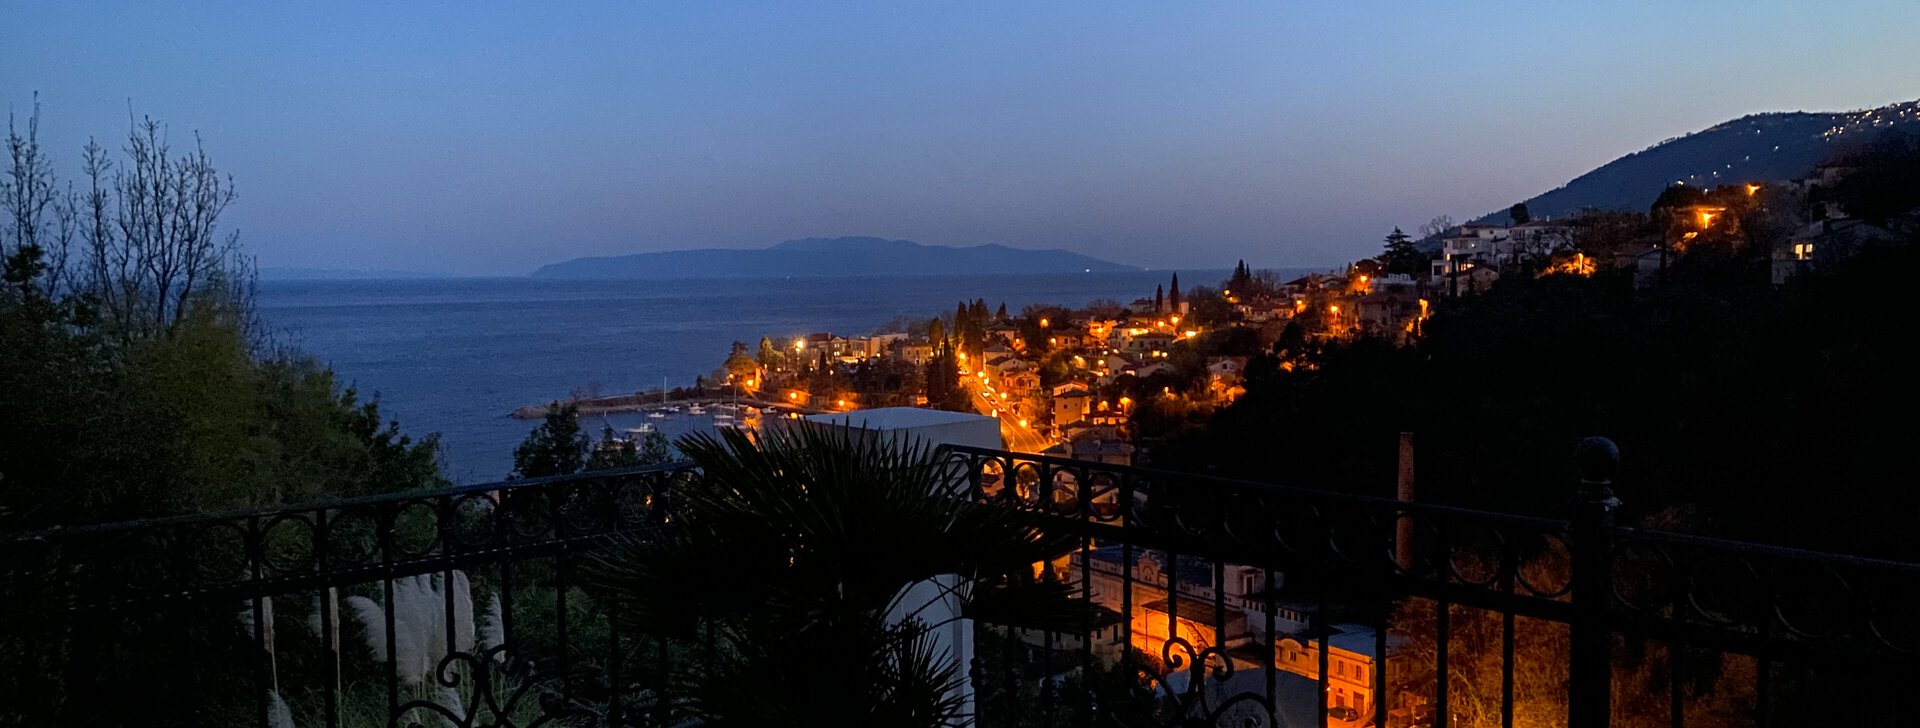 Ausblick Abends, Traumhafte und großzügige Wohnung mit Blick aufs Meer in Kroatien, Immobilie kaufen, Ičići-Kroatien | © HausBauHaus GmbH